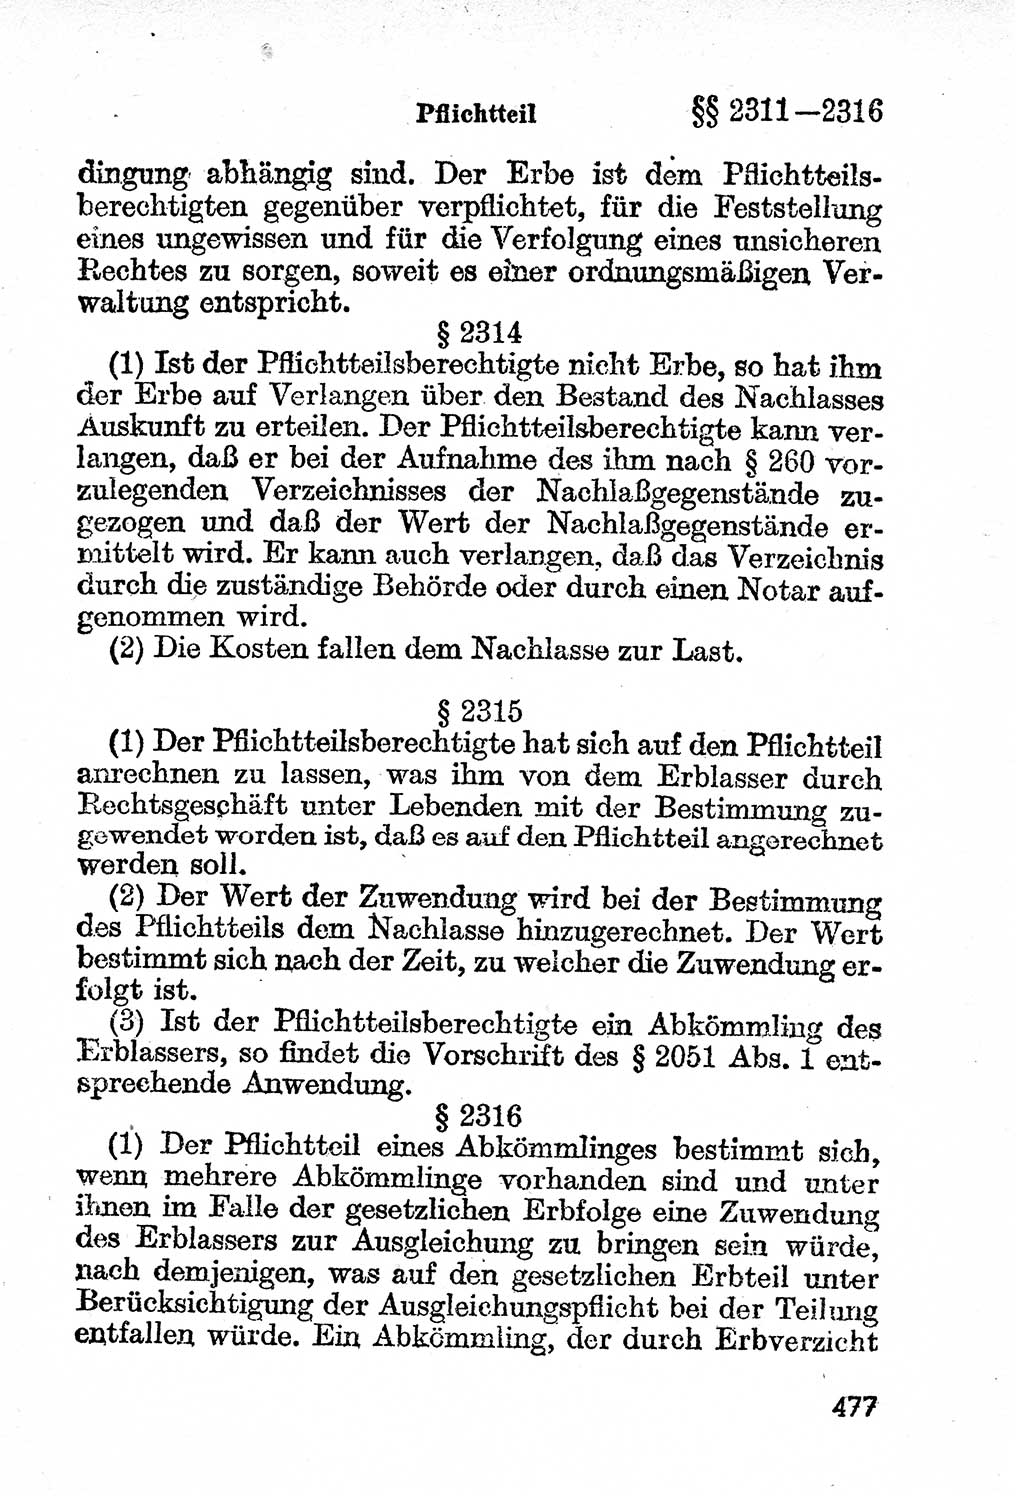 Bürgerliches Gesetzbuch (BGB) nebst wichtigen Nebengesetzen [Deutsche Demokratische Republik (DDR)] 1956, Seite 477 (BGB Nebenges. DDR 1956, S. 477)